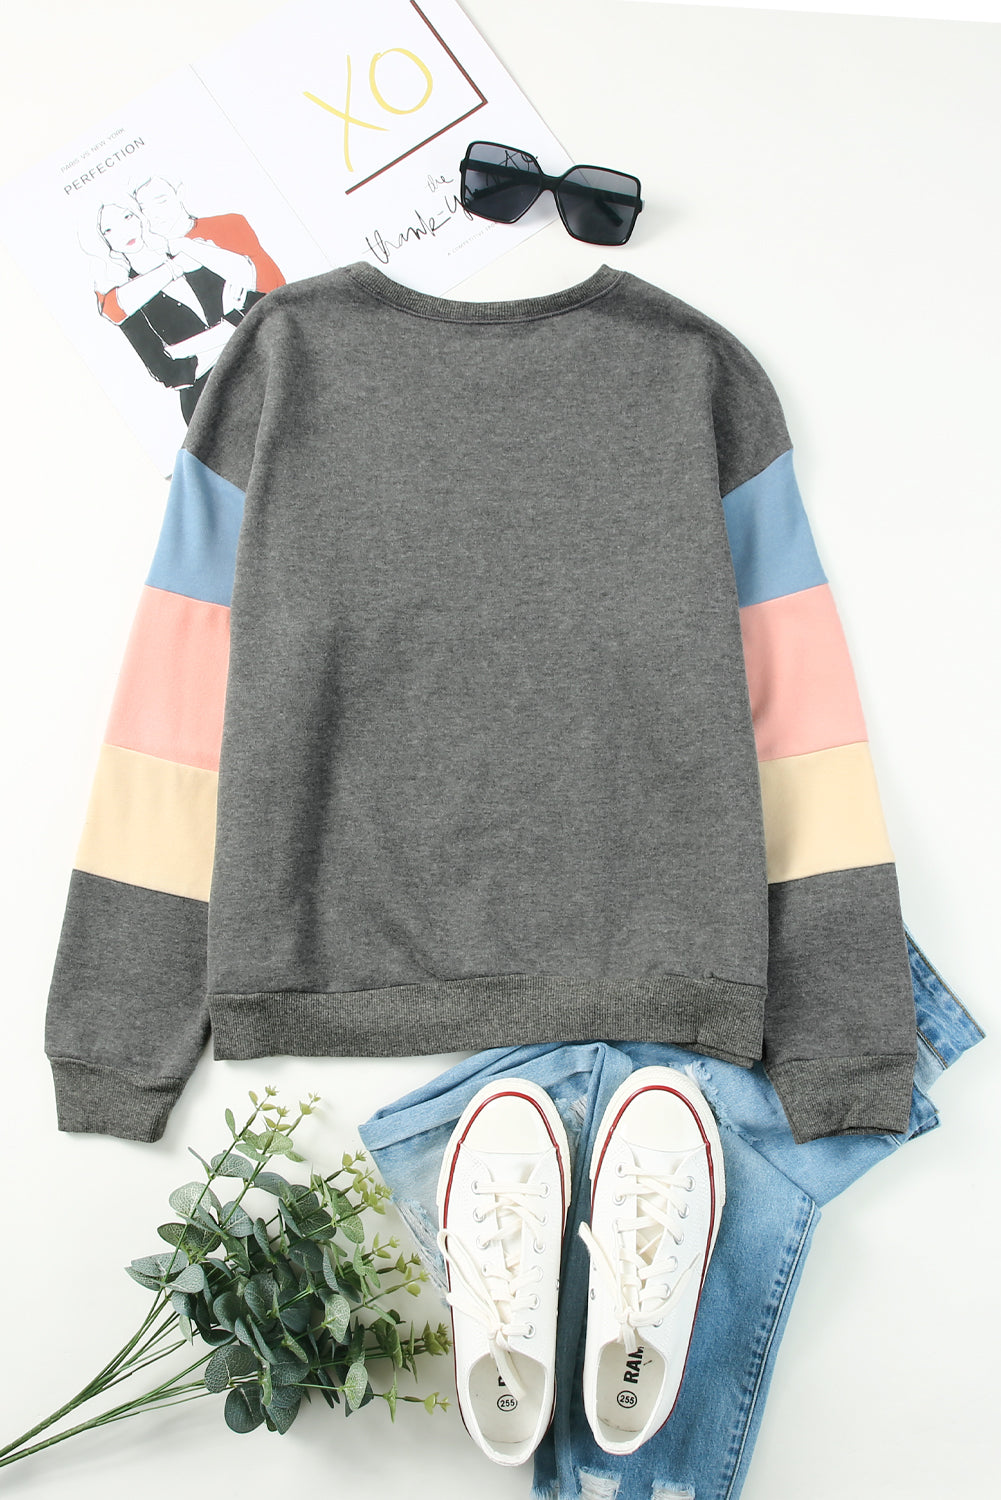 Siv pulover z dolgimi rokavi Colorblock